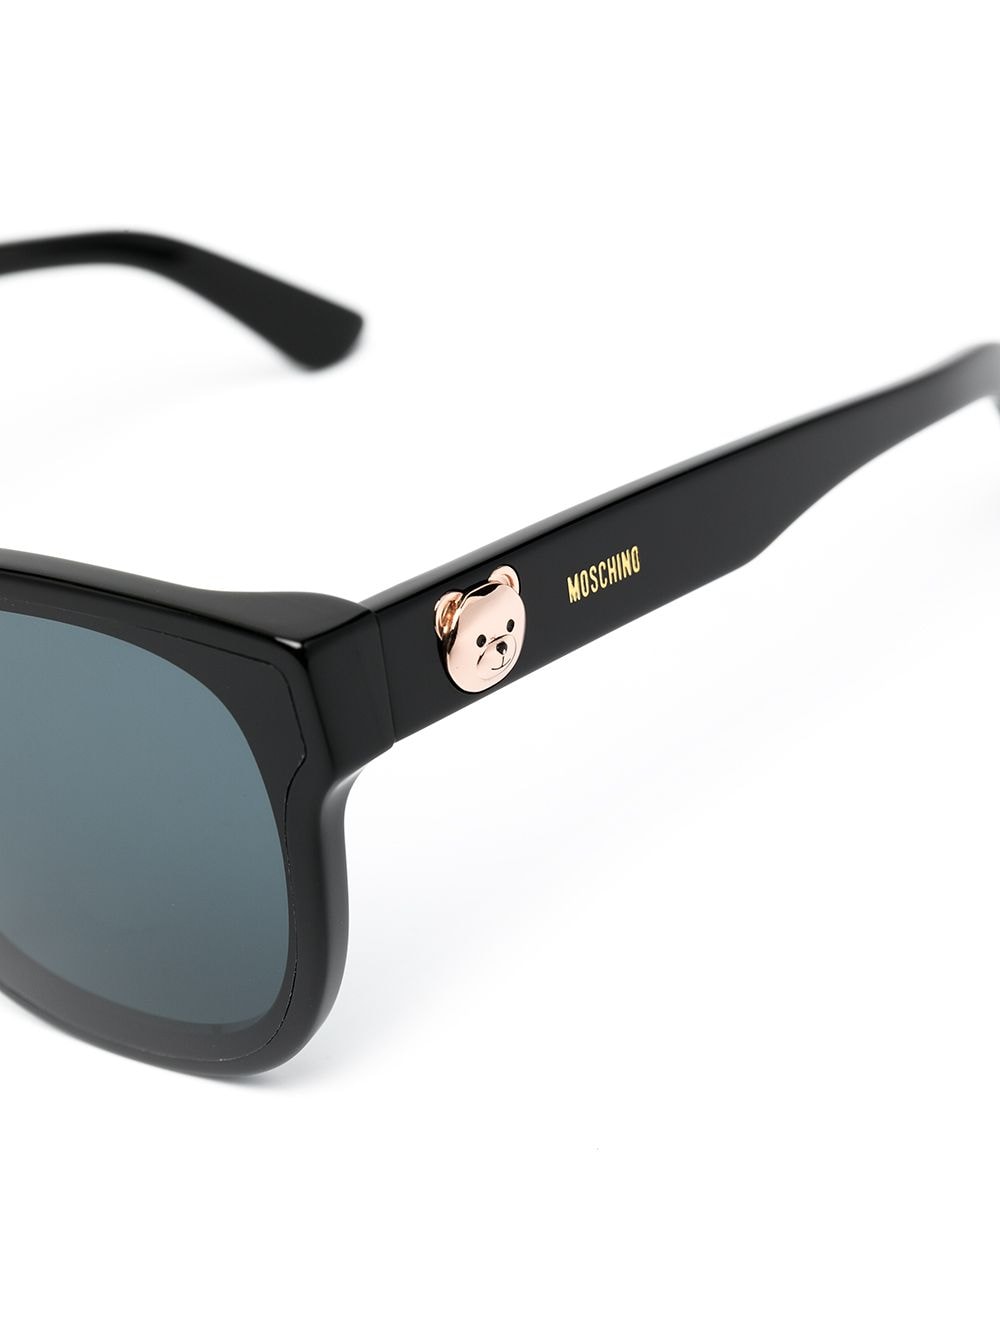 фото Moschino eyewear солнцезащитные очки teddy bear в оправе 'кошачий глаз'